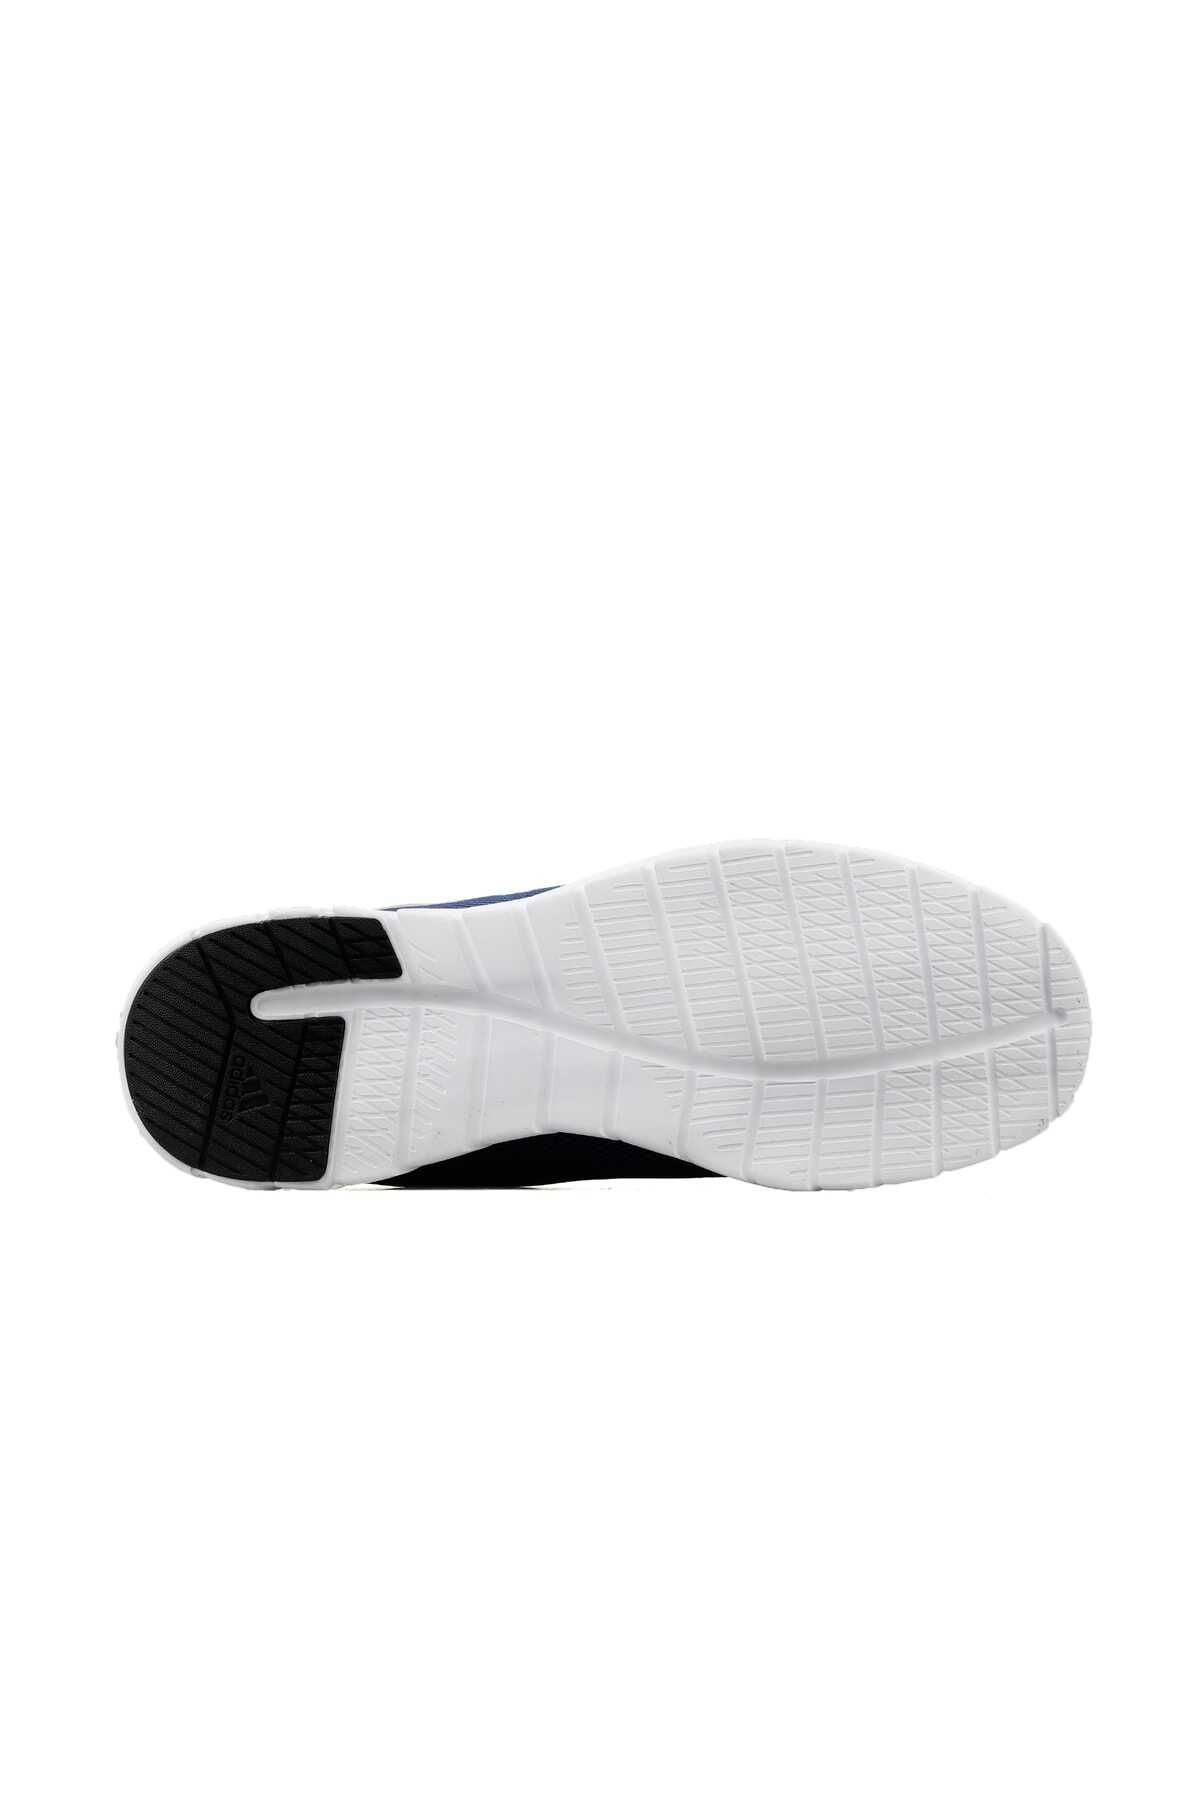 کفش ورزشی مردانه سرمه ای کد G28971 برند adidas 